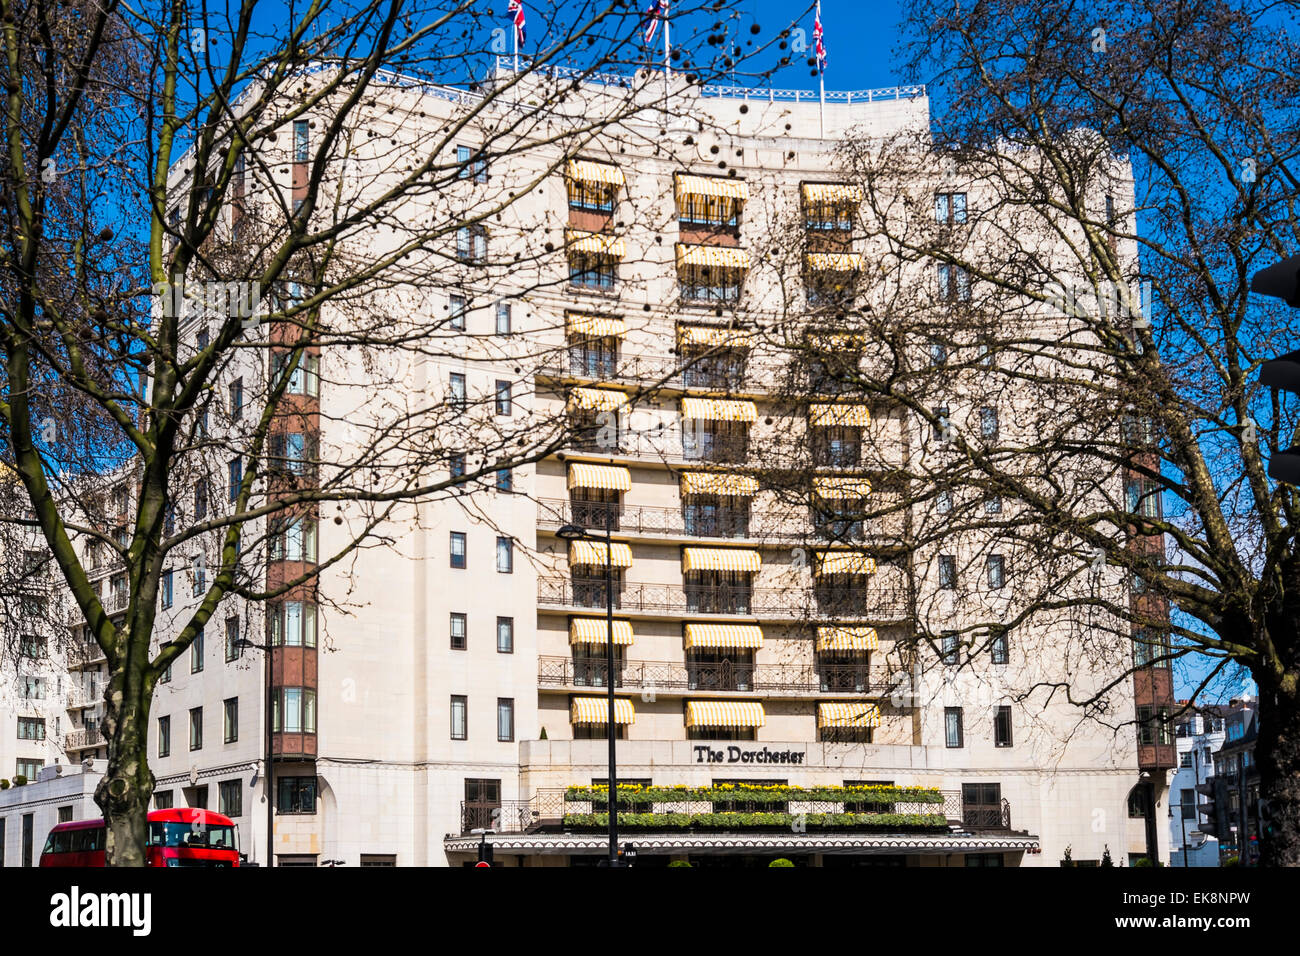 The Dorchester Hotel - London Stock Photo